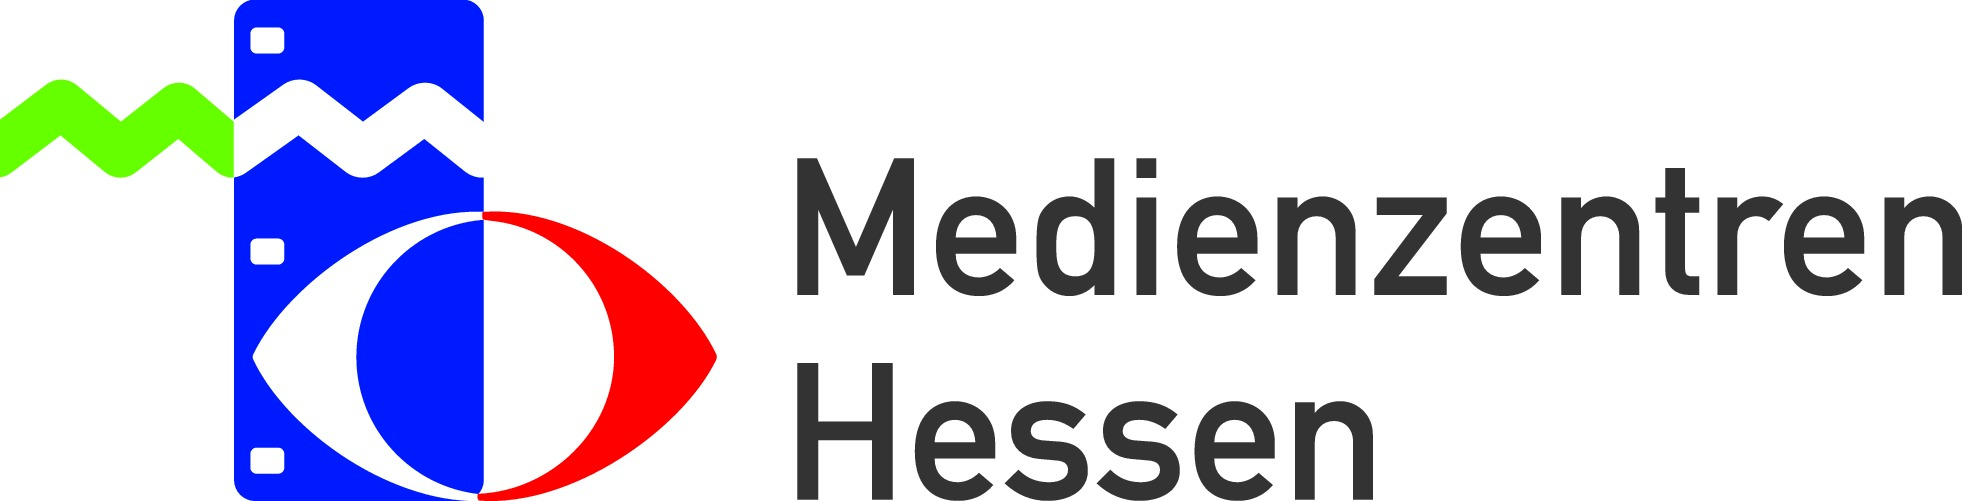 Zur Website der Medienzentren in Hessen